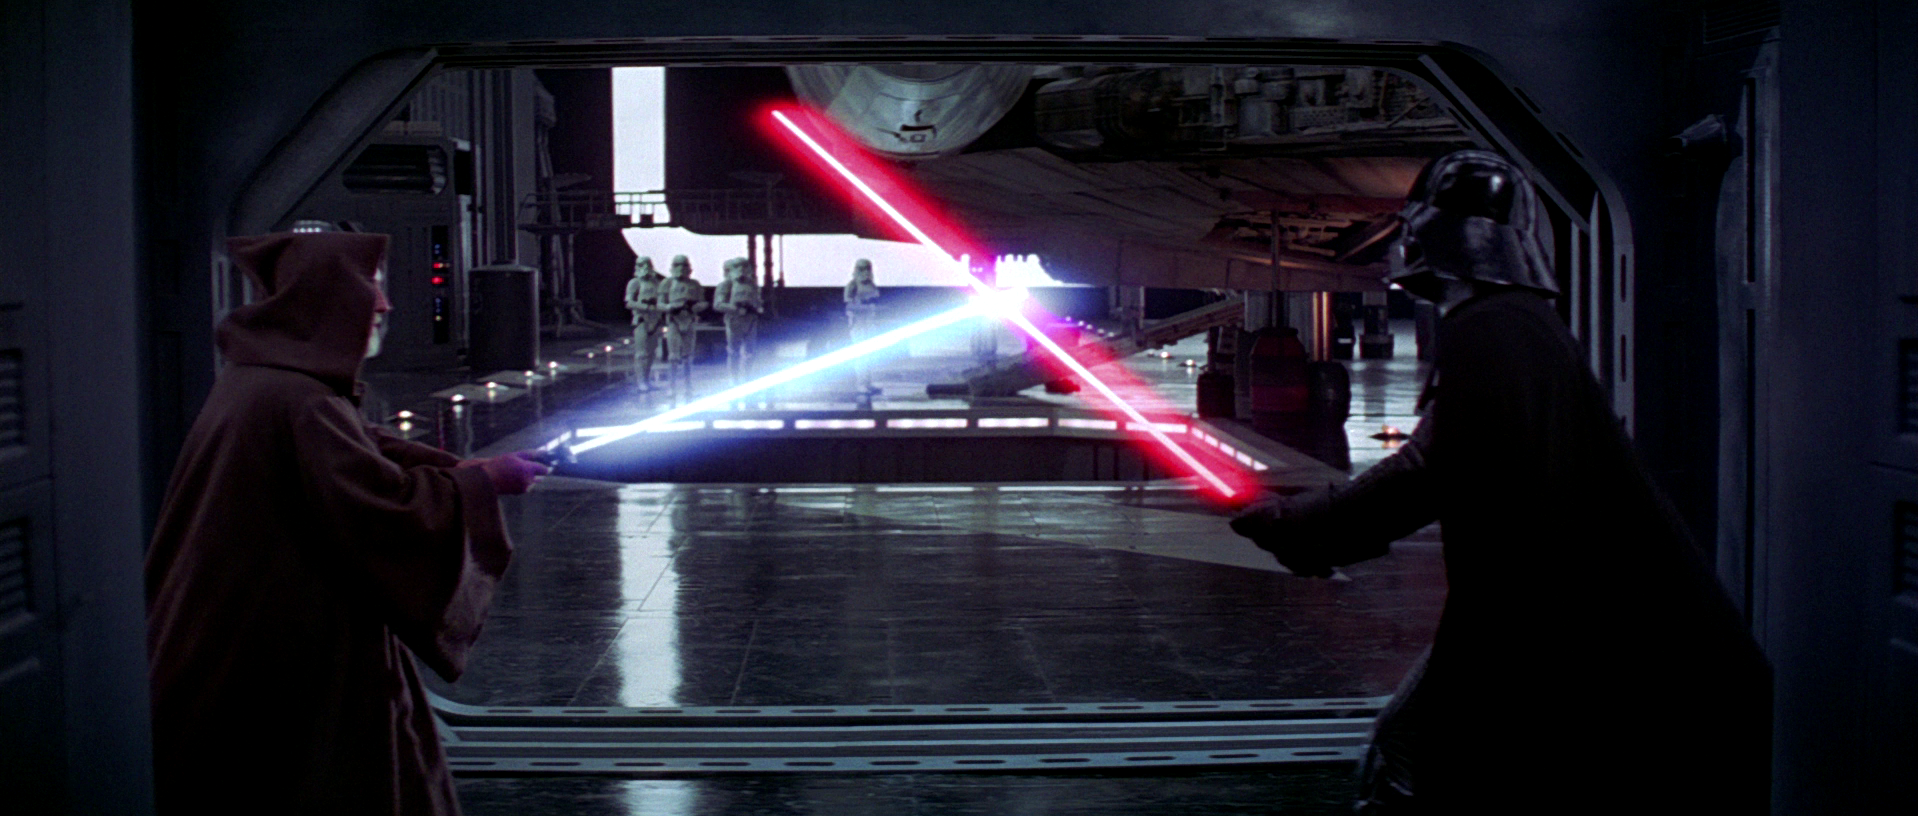 Darth Vader and Obi Wan Kenobi facing off in Star Wars